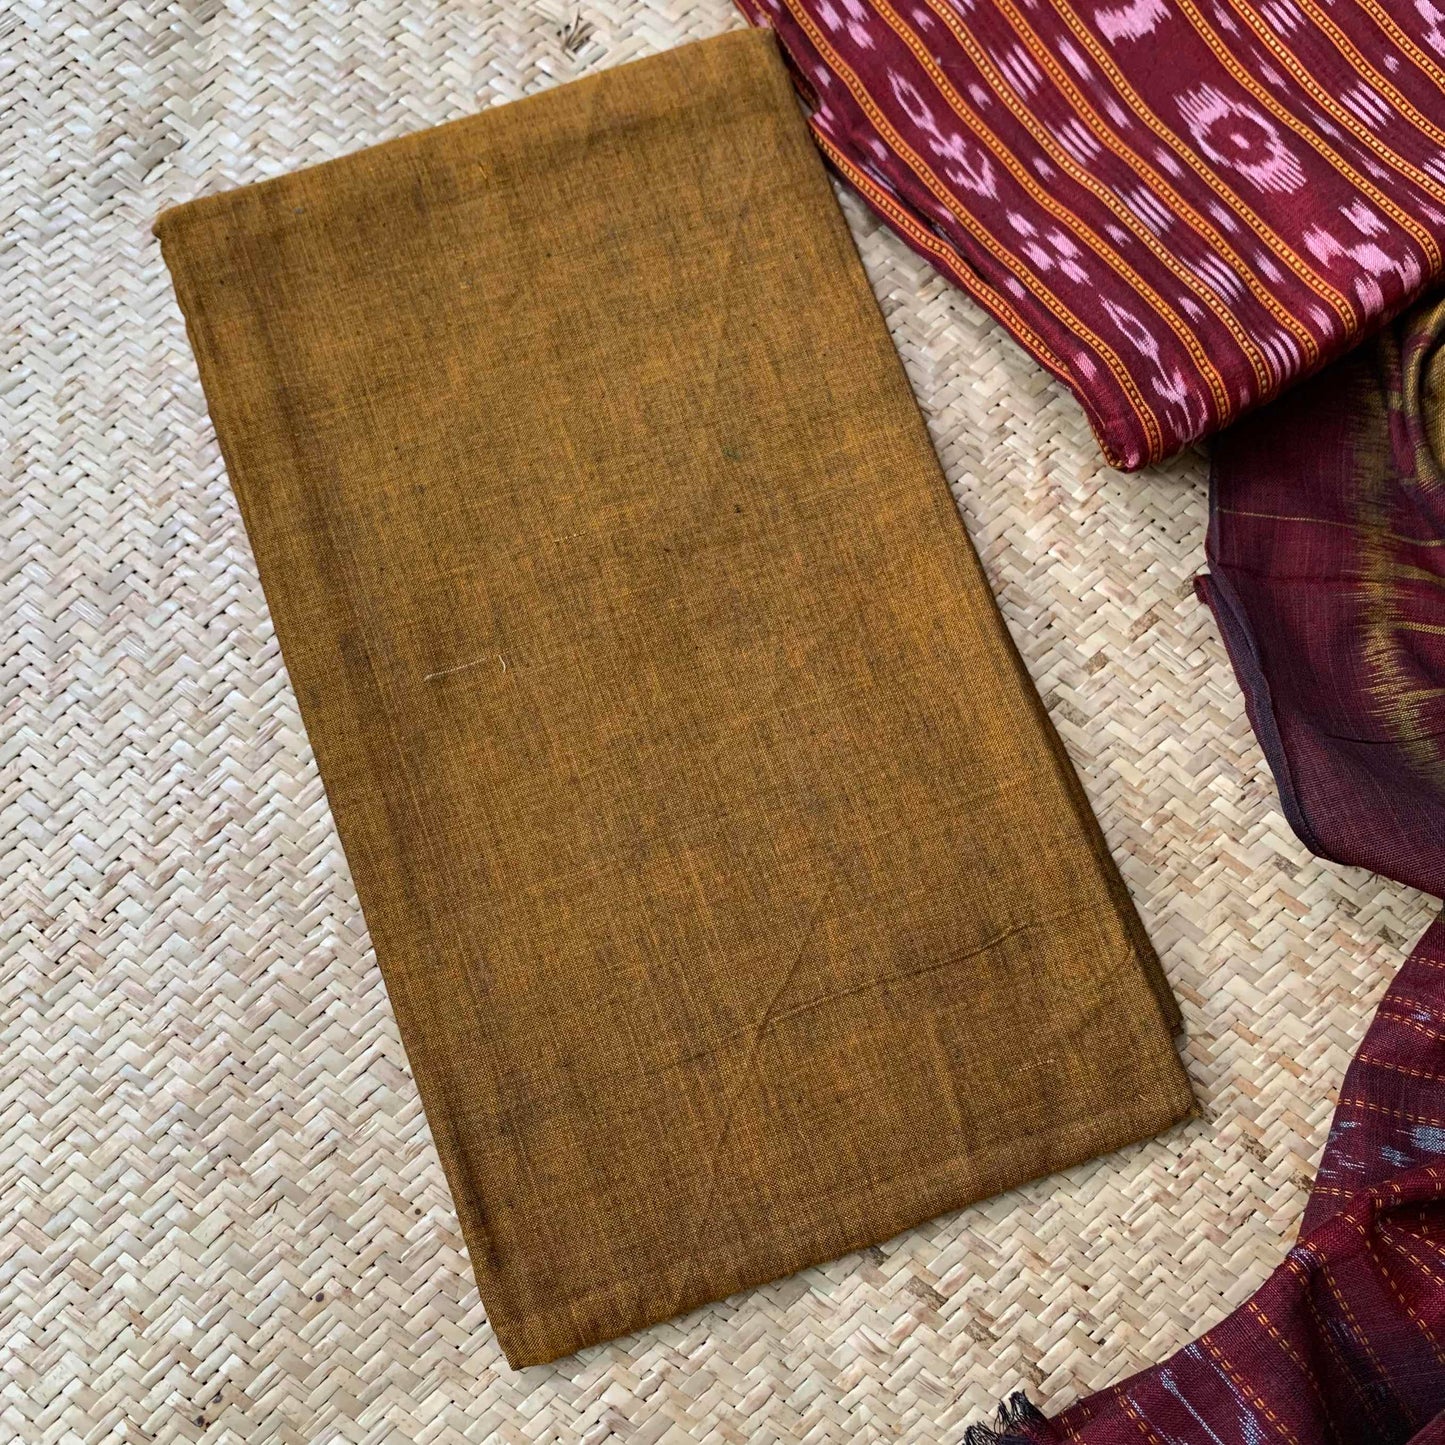 Maroon With Brown Handwoven Sambalpuri Ikkat Cotton Salwar Suite Material